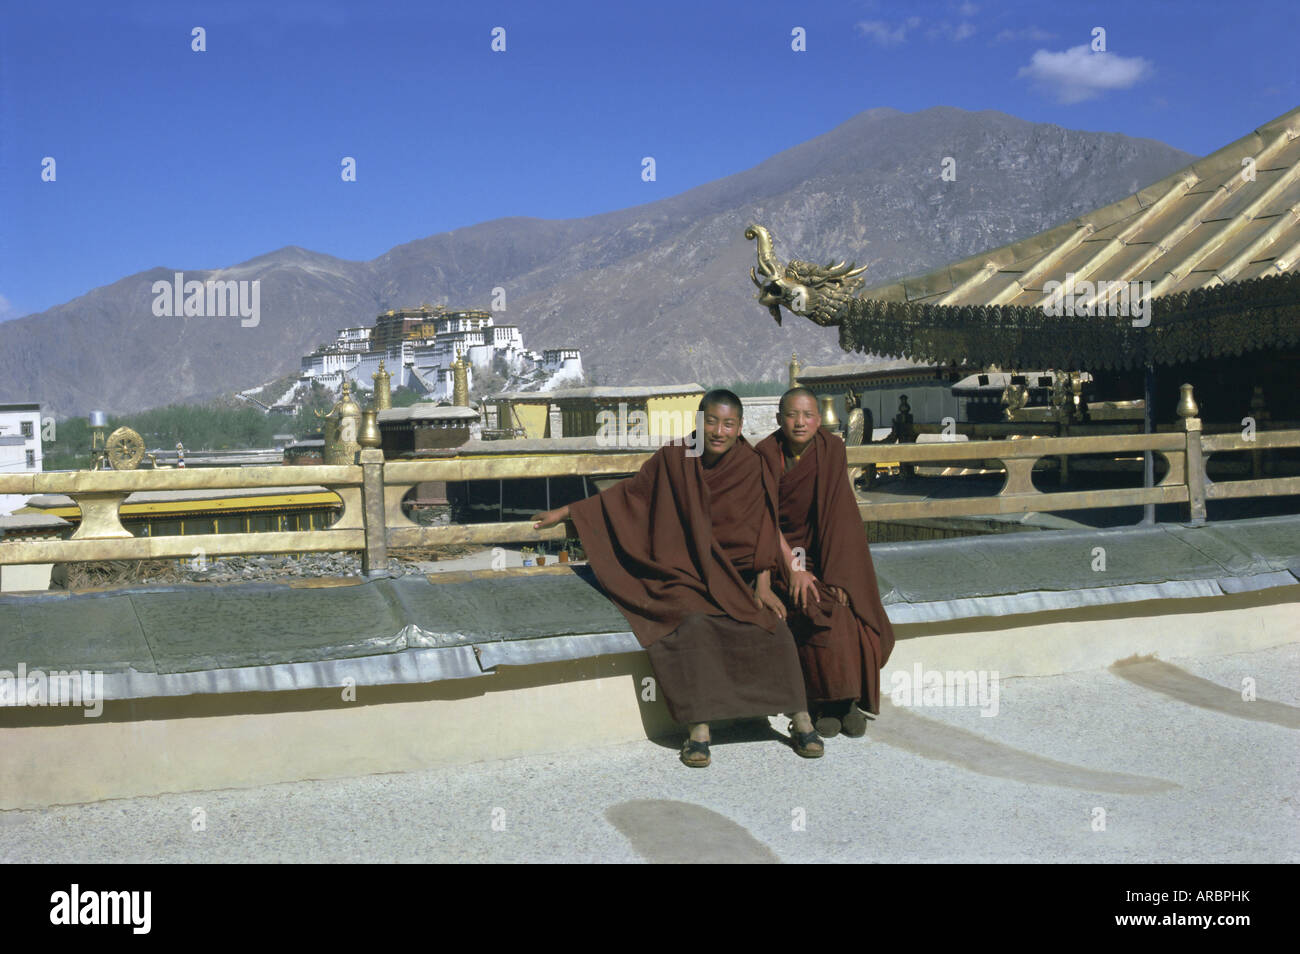 Deux moines bouddhistes tibétains au temple de Jokhang, avec le palais du Potala, Lhassa, Tibet derrière, la Chine, l'Asie Banque D'Images